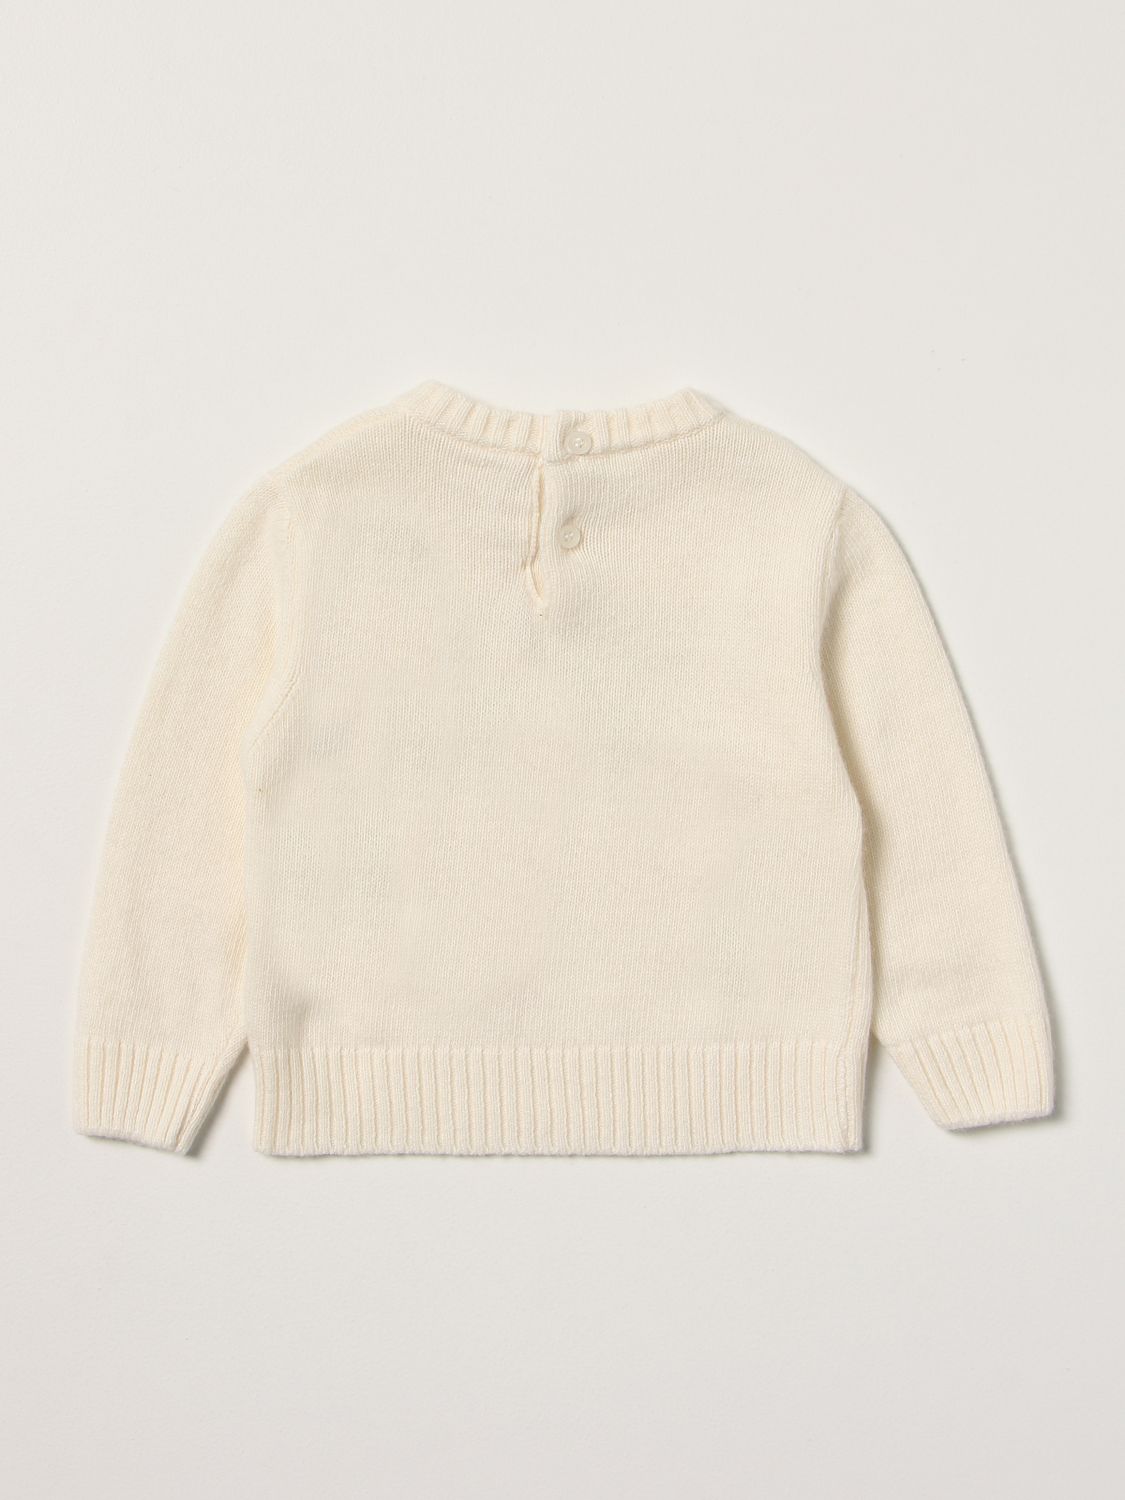 Sweater Miss Blumarine: Sweater kids Miss Blumarine yellow cream 2